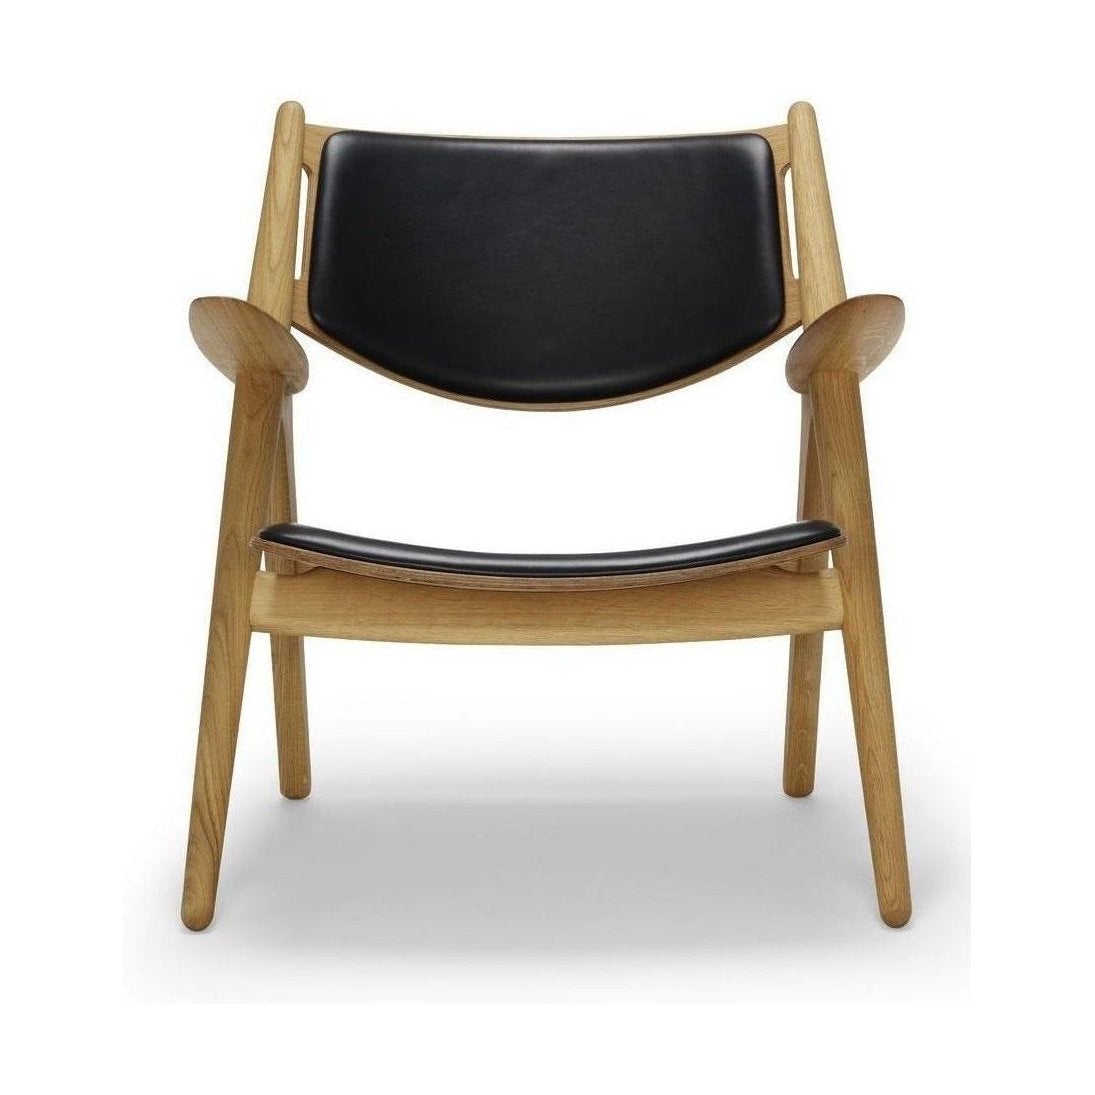 Carl Hansen CH28 P fauteuil, geolied eiken/zwart leer